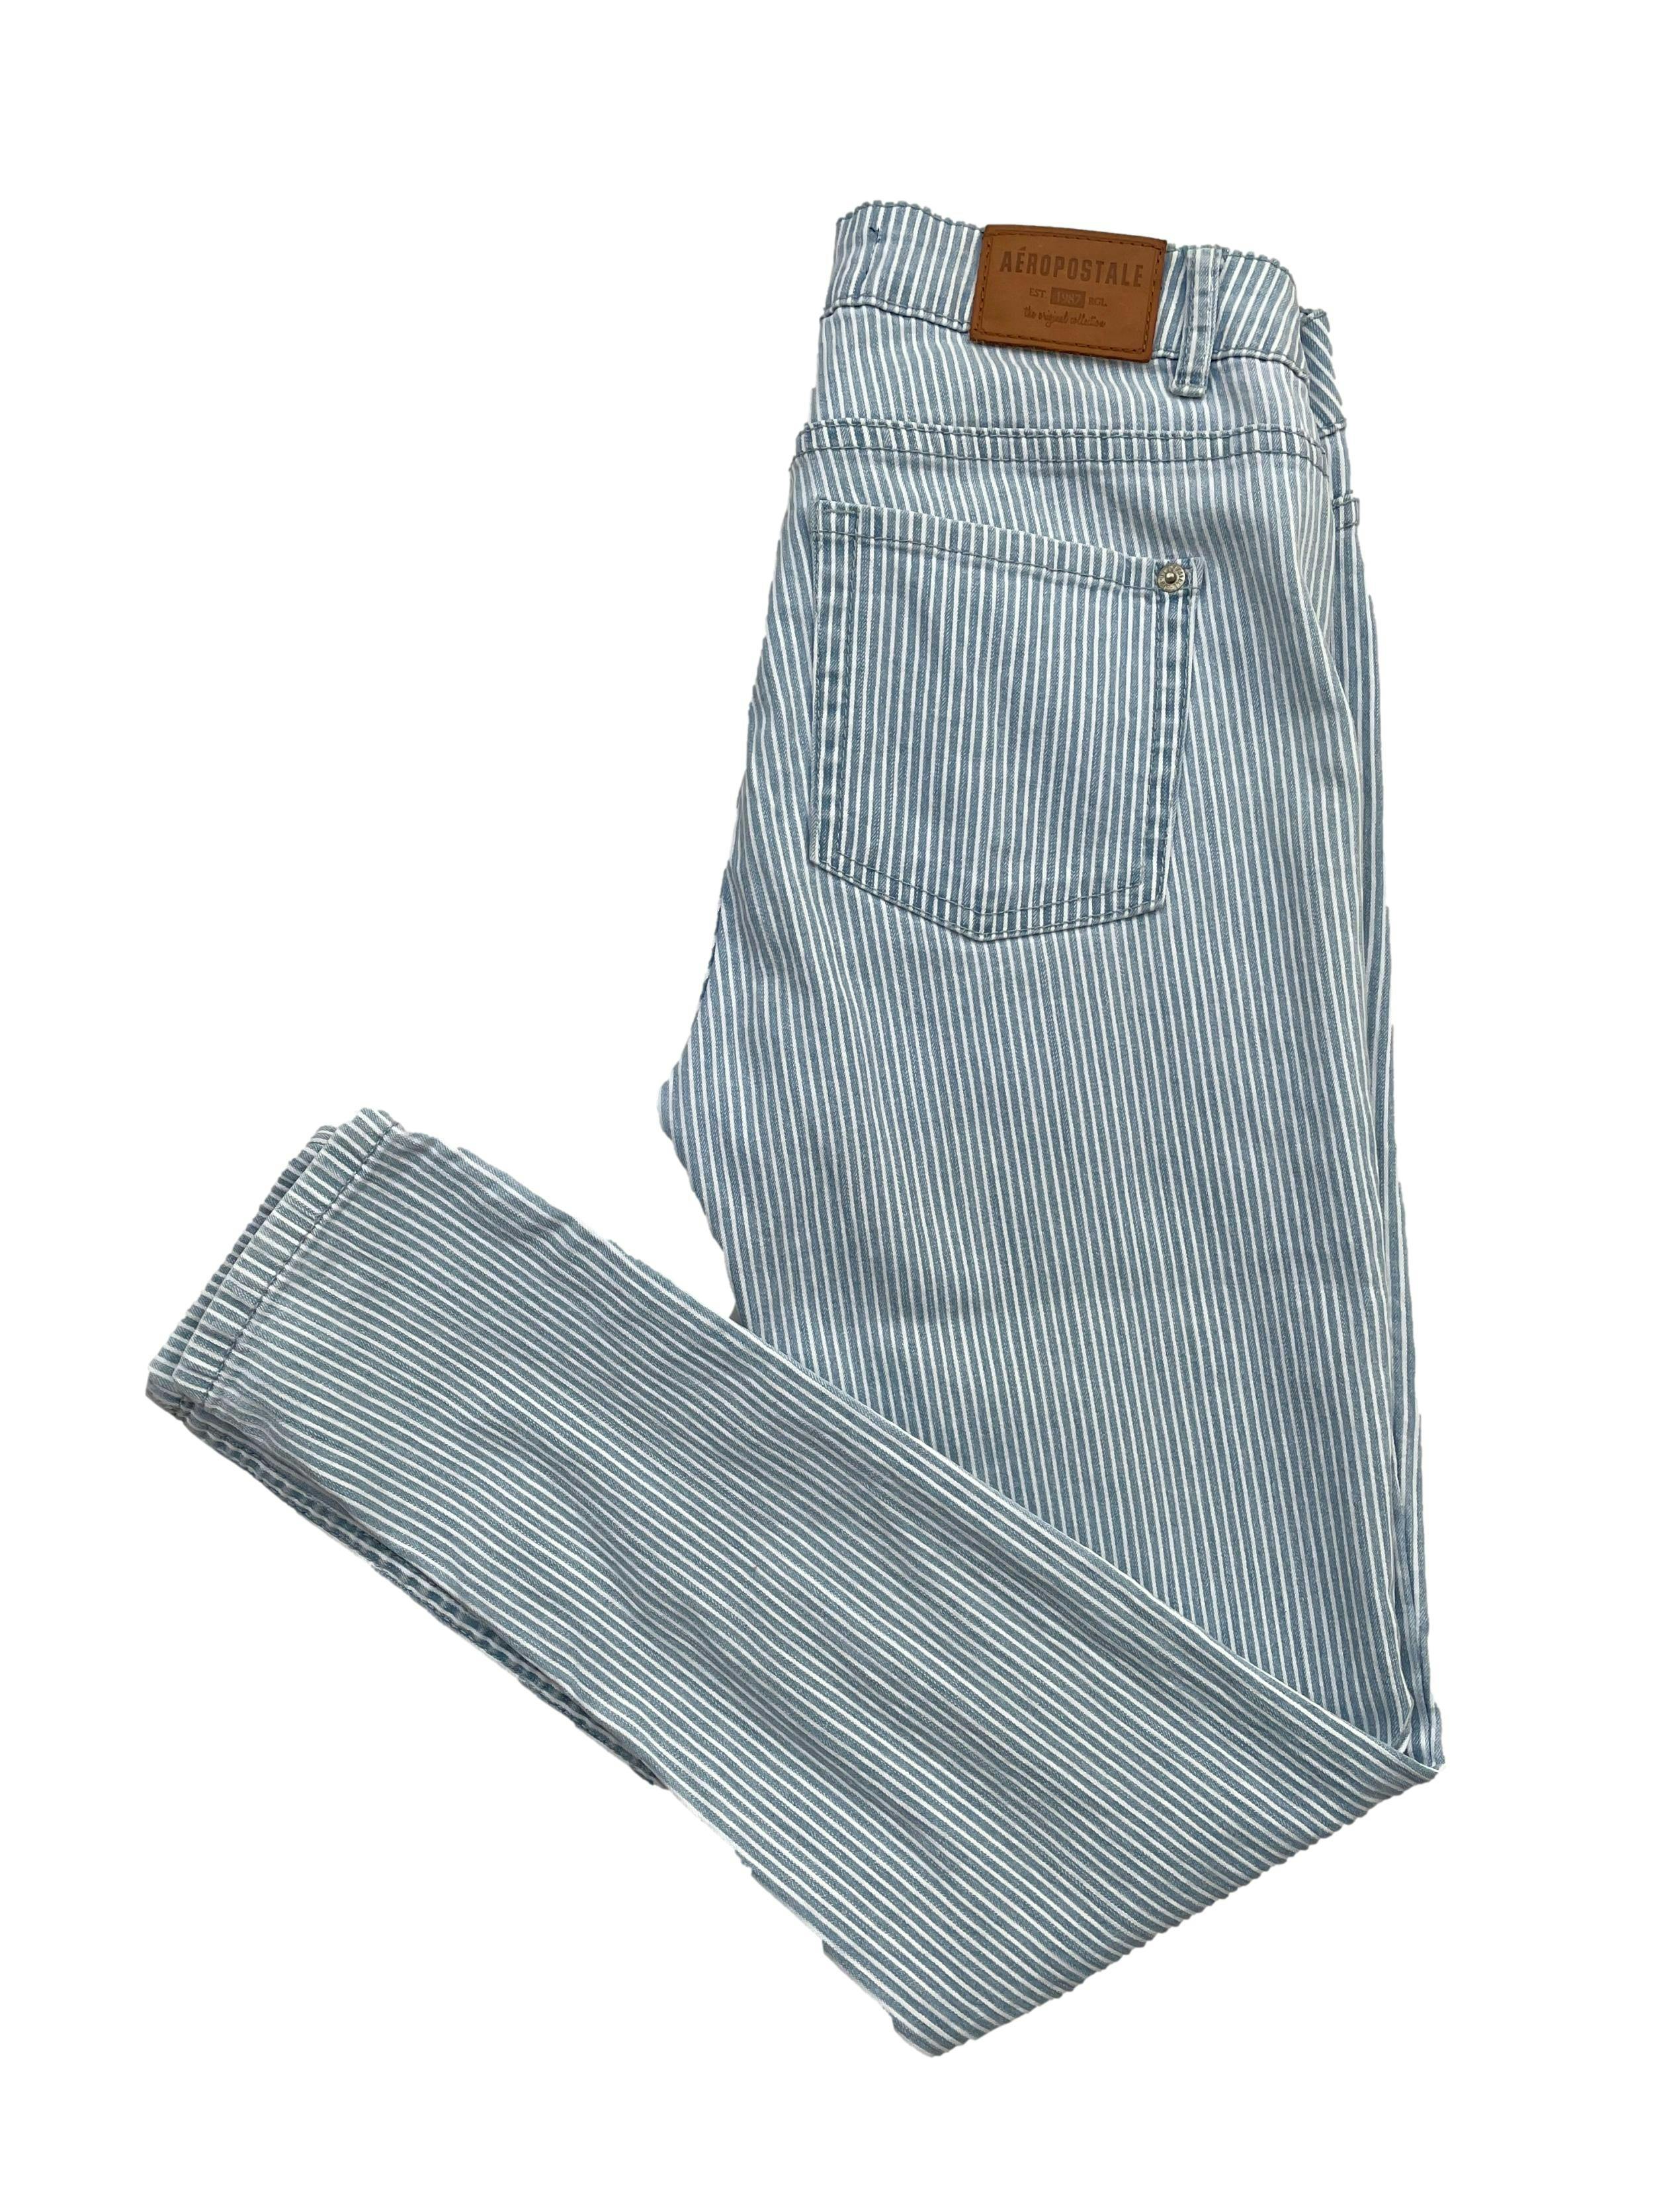 Skinny Jeans Aeropostale a rayas blancas y celestes, rasgado en las rodillas con bolsillos traseros. Cintura: 75cm, Largo: 92cm, Tiro: 24cm. Talla: 30